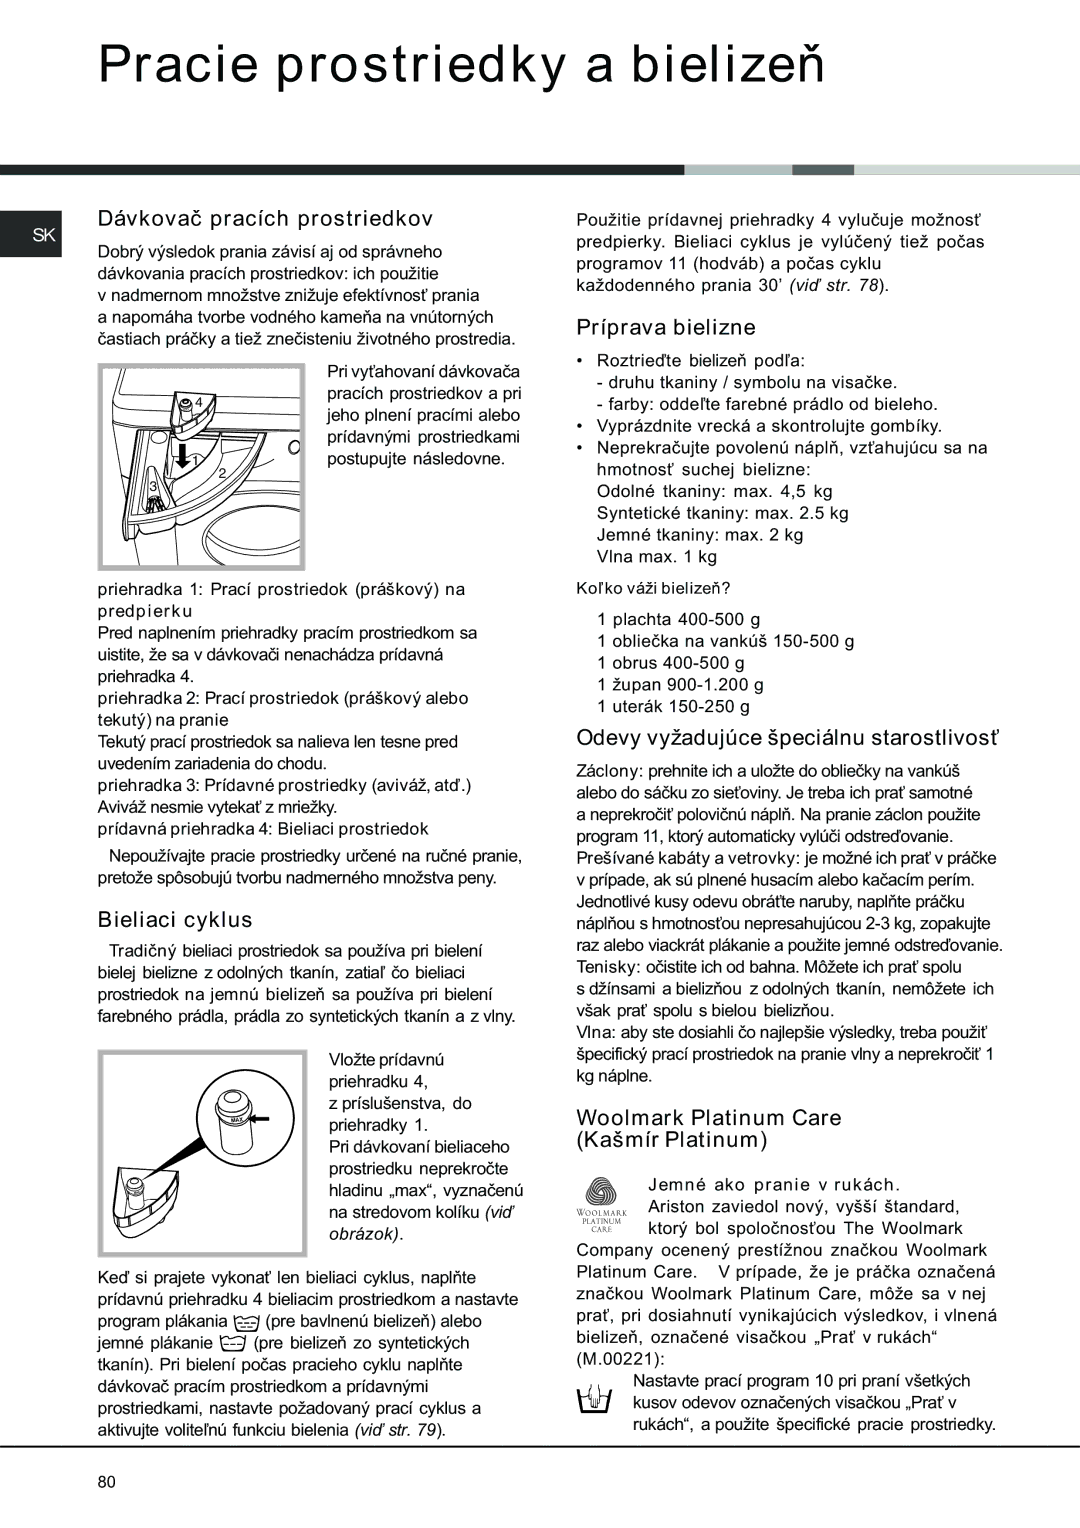 Ariston AVSD 109 manual Pracie prostriedky a bielizeò, Dávkovaè pracích prostriedkov, Príprava bielizne, Bieliaci cyklus 